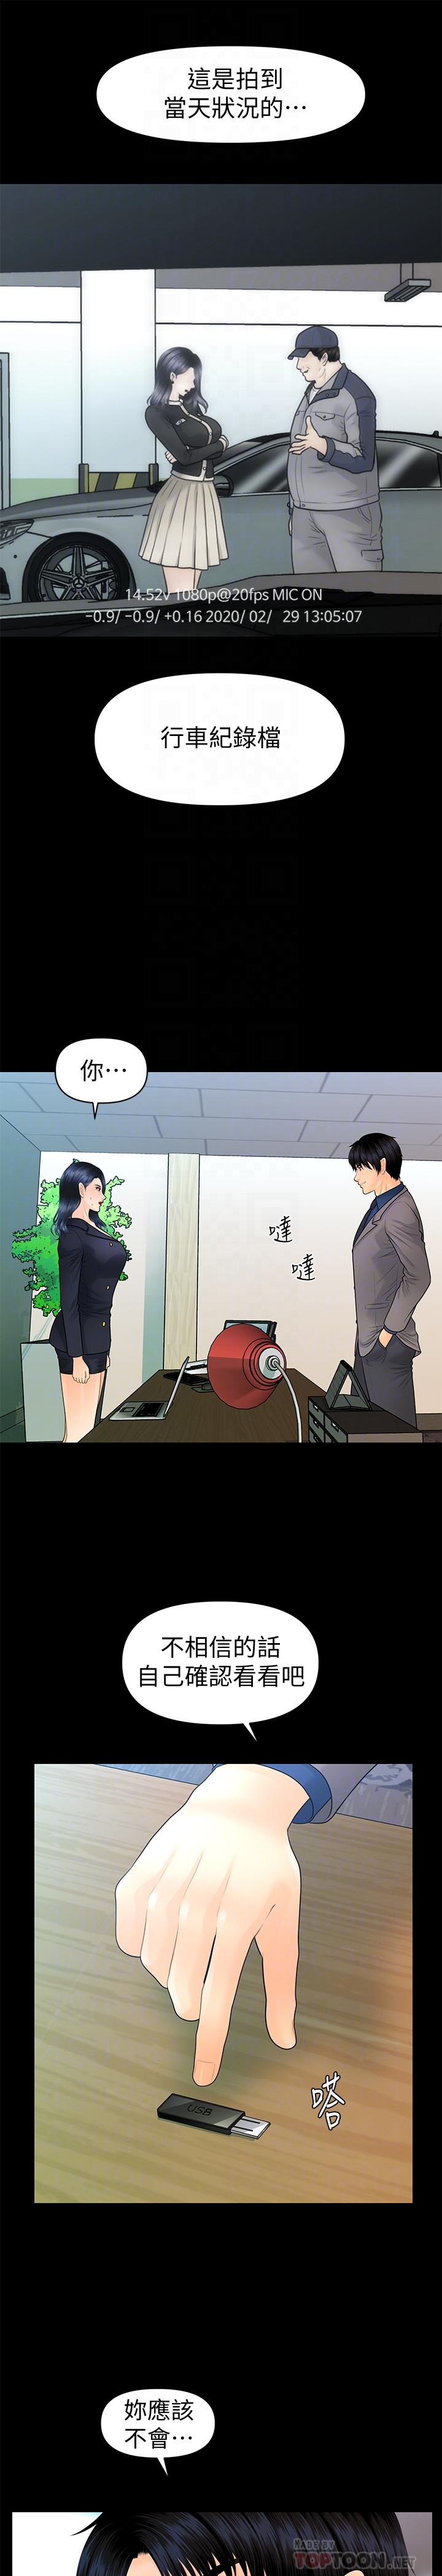 《秘书的潜规则》漫画 第83话-狠下杀手镧的朴胜哲